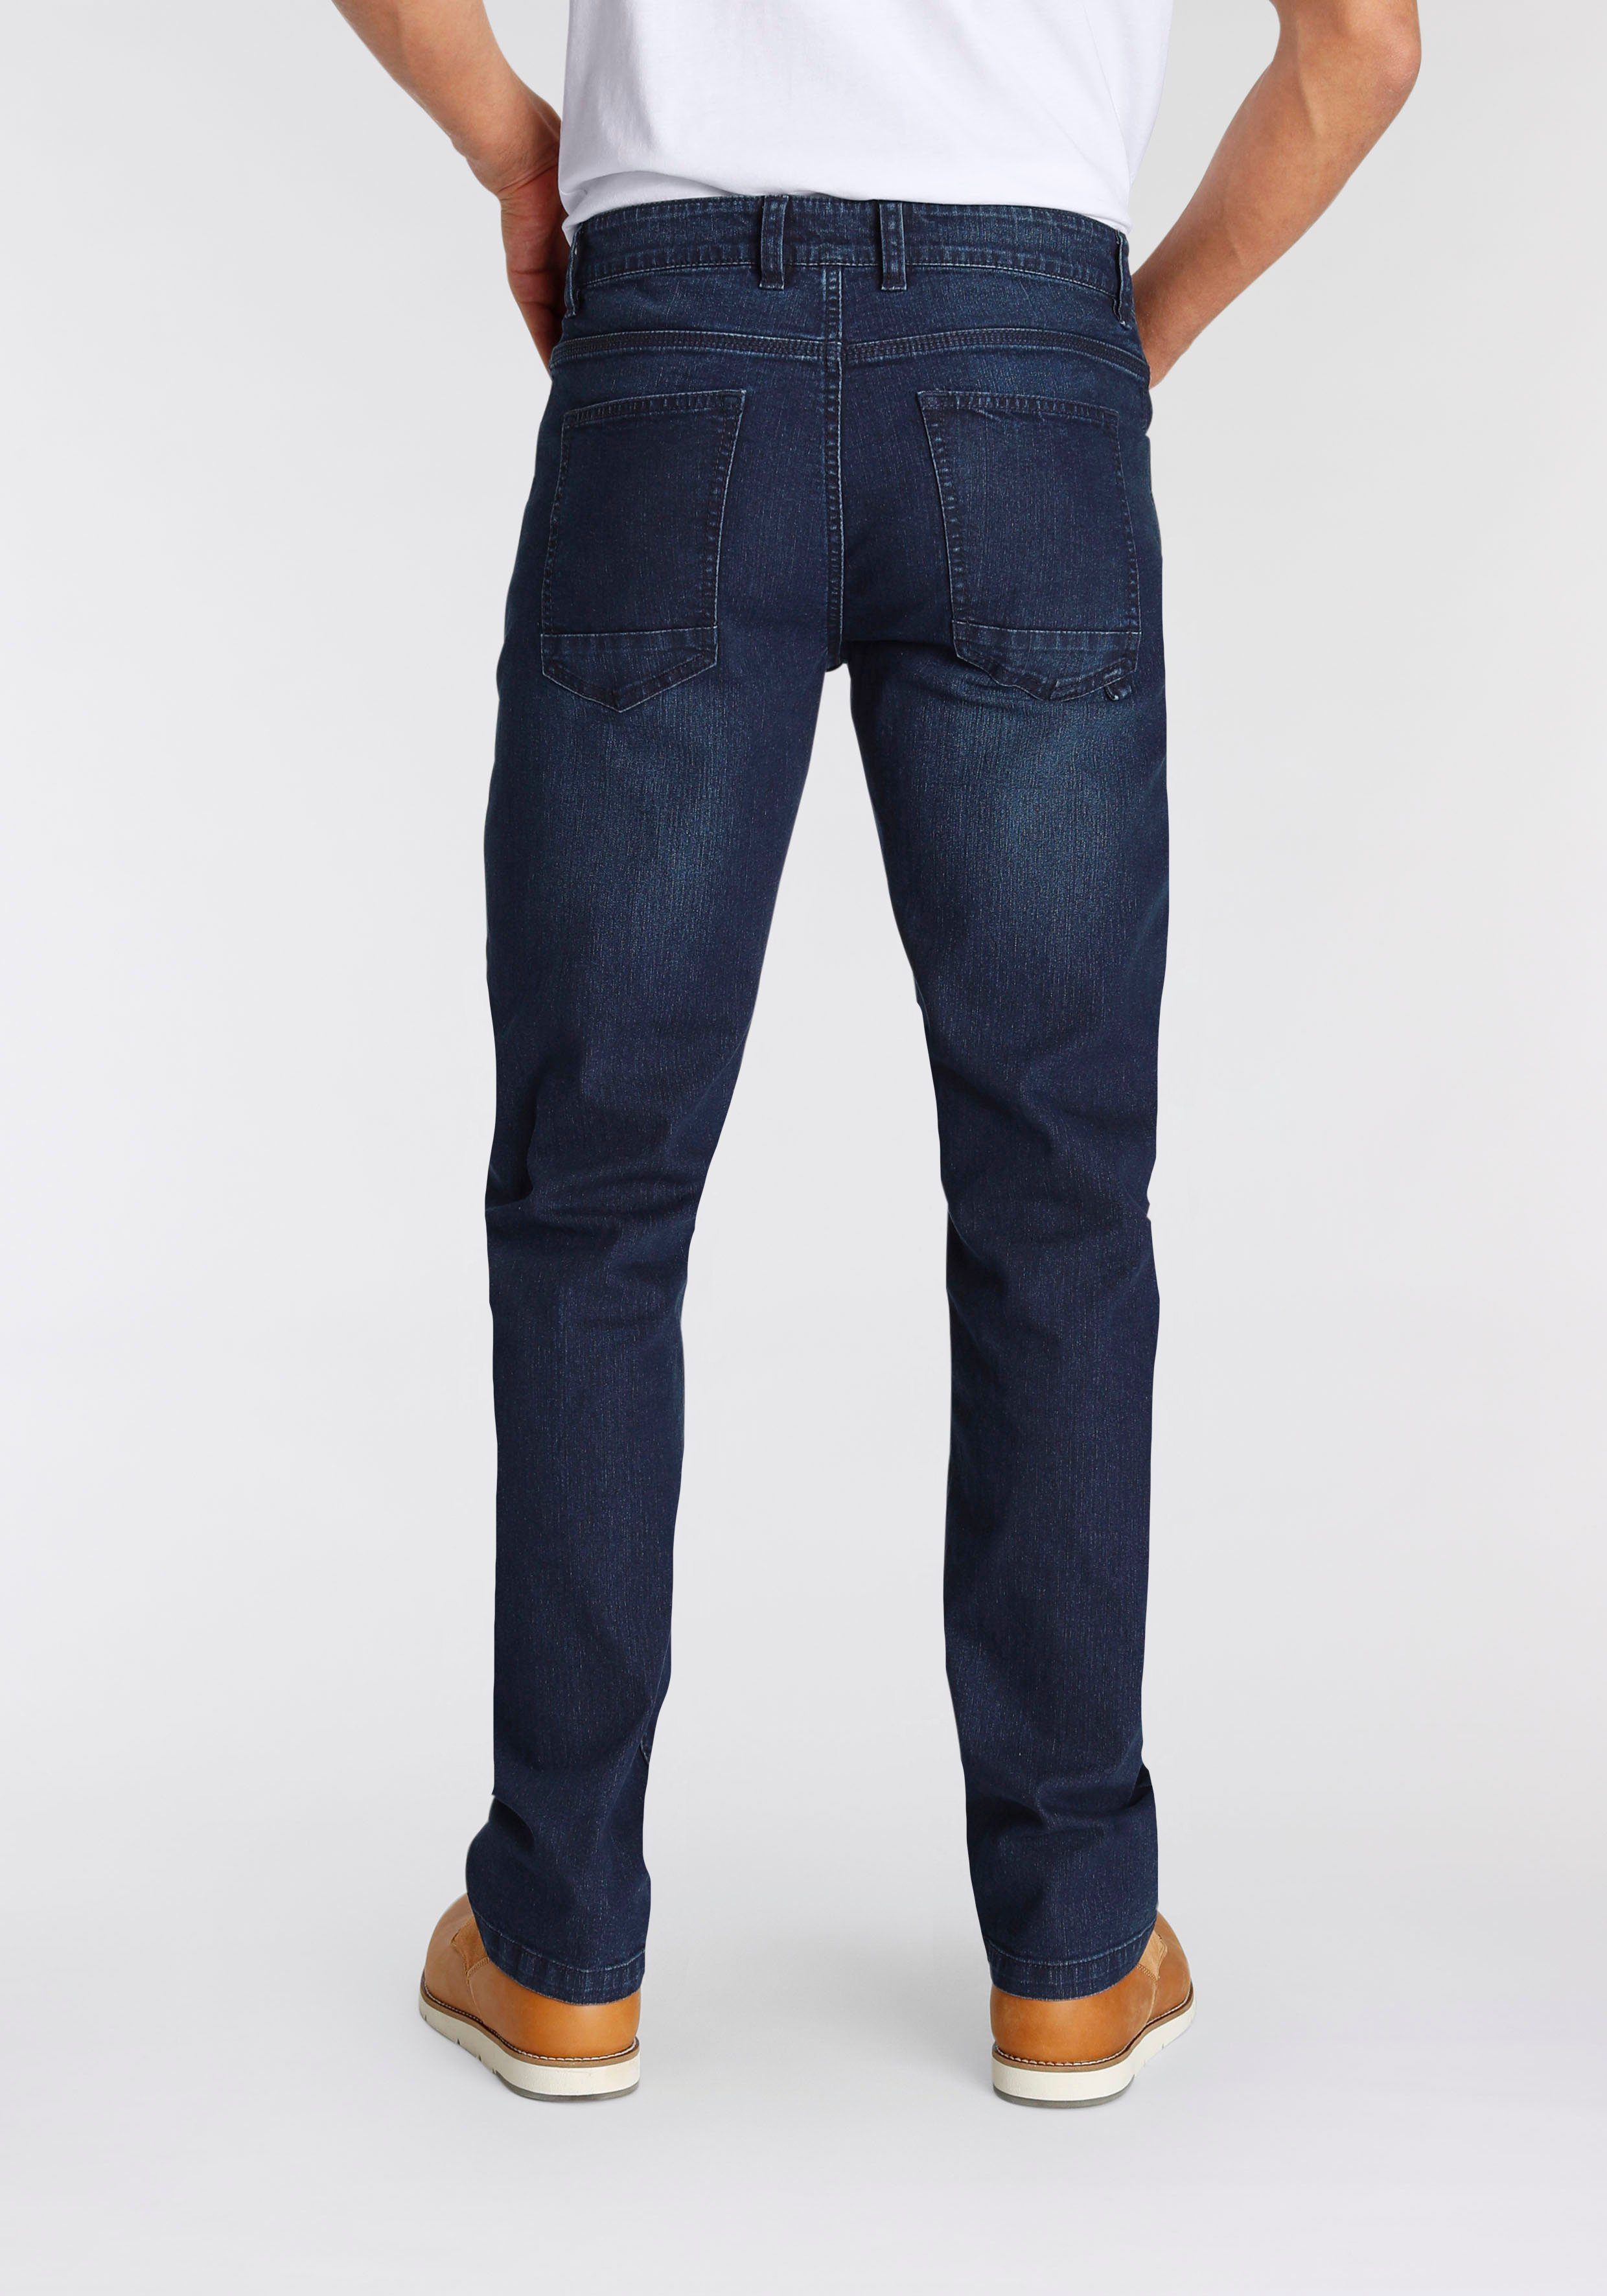 AJC Straight-Jeans dark Waschung blue leichter mit